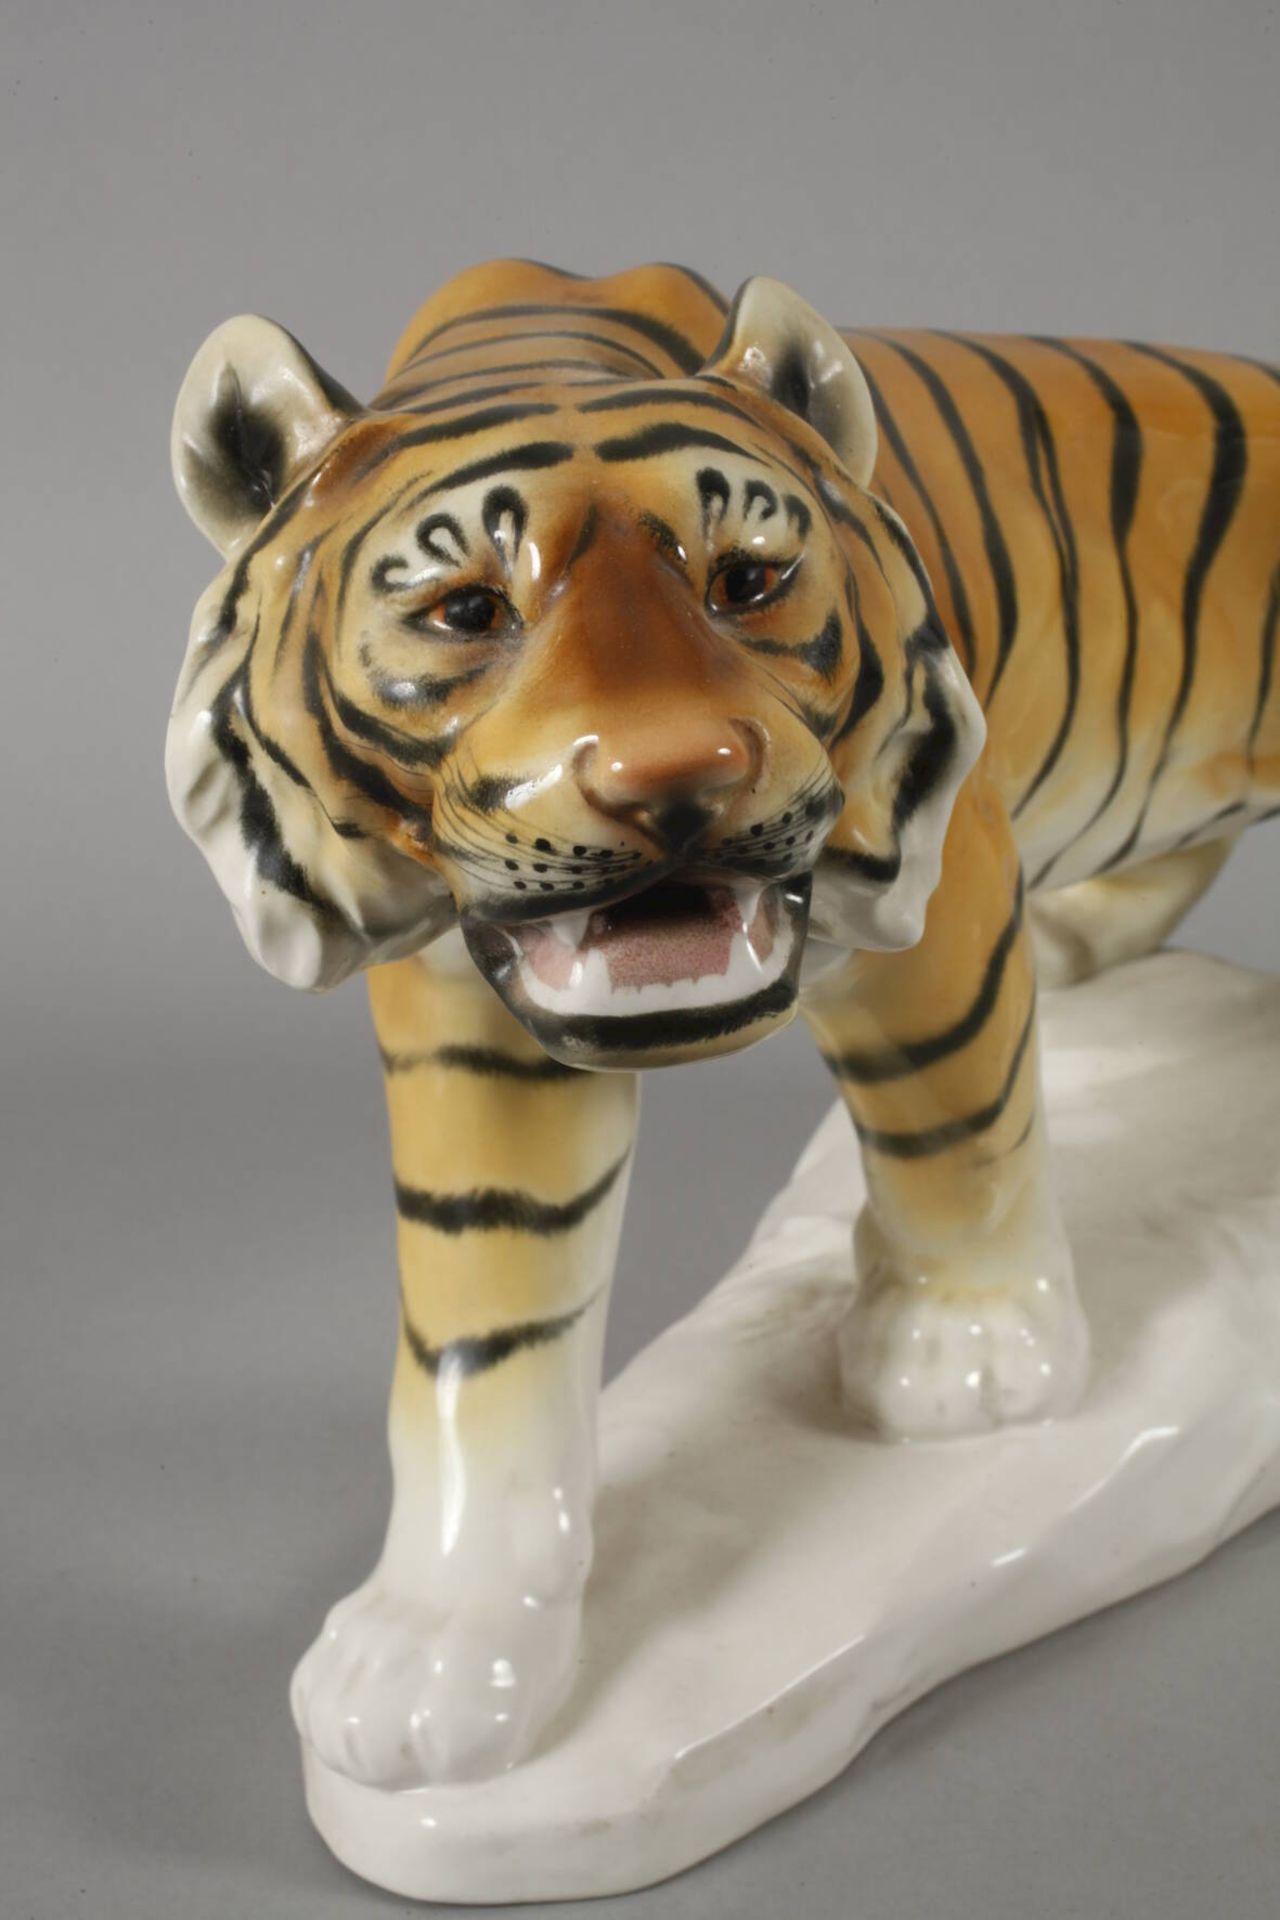 Herzinger & Co. Volkstedt großer Tiger - Bild 2 aus 6